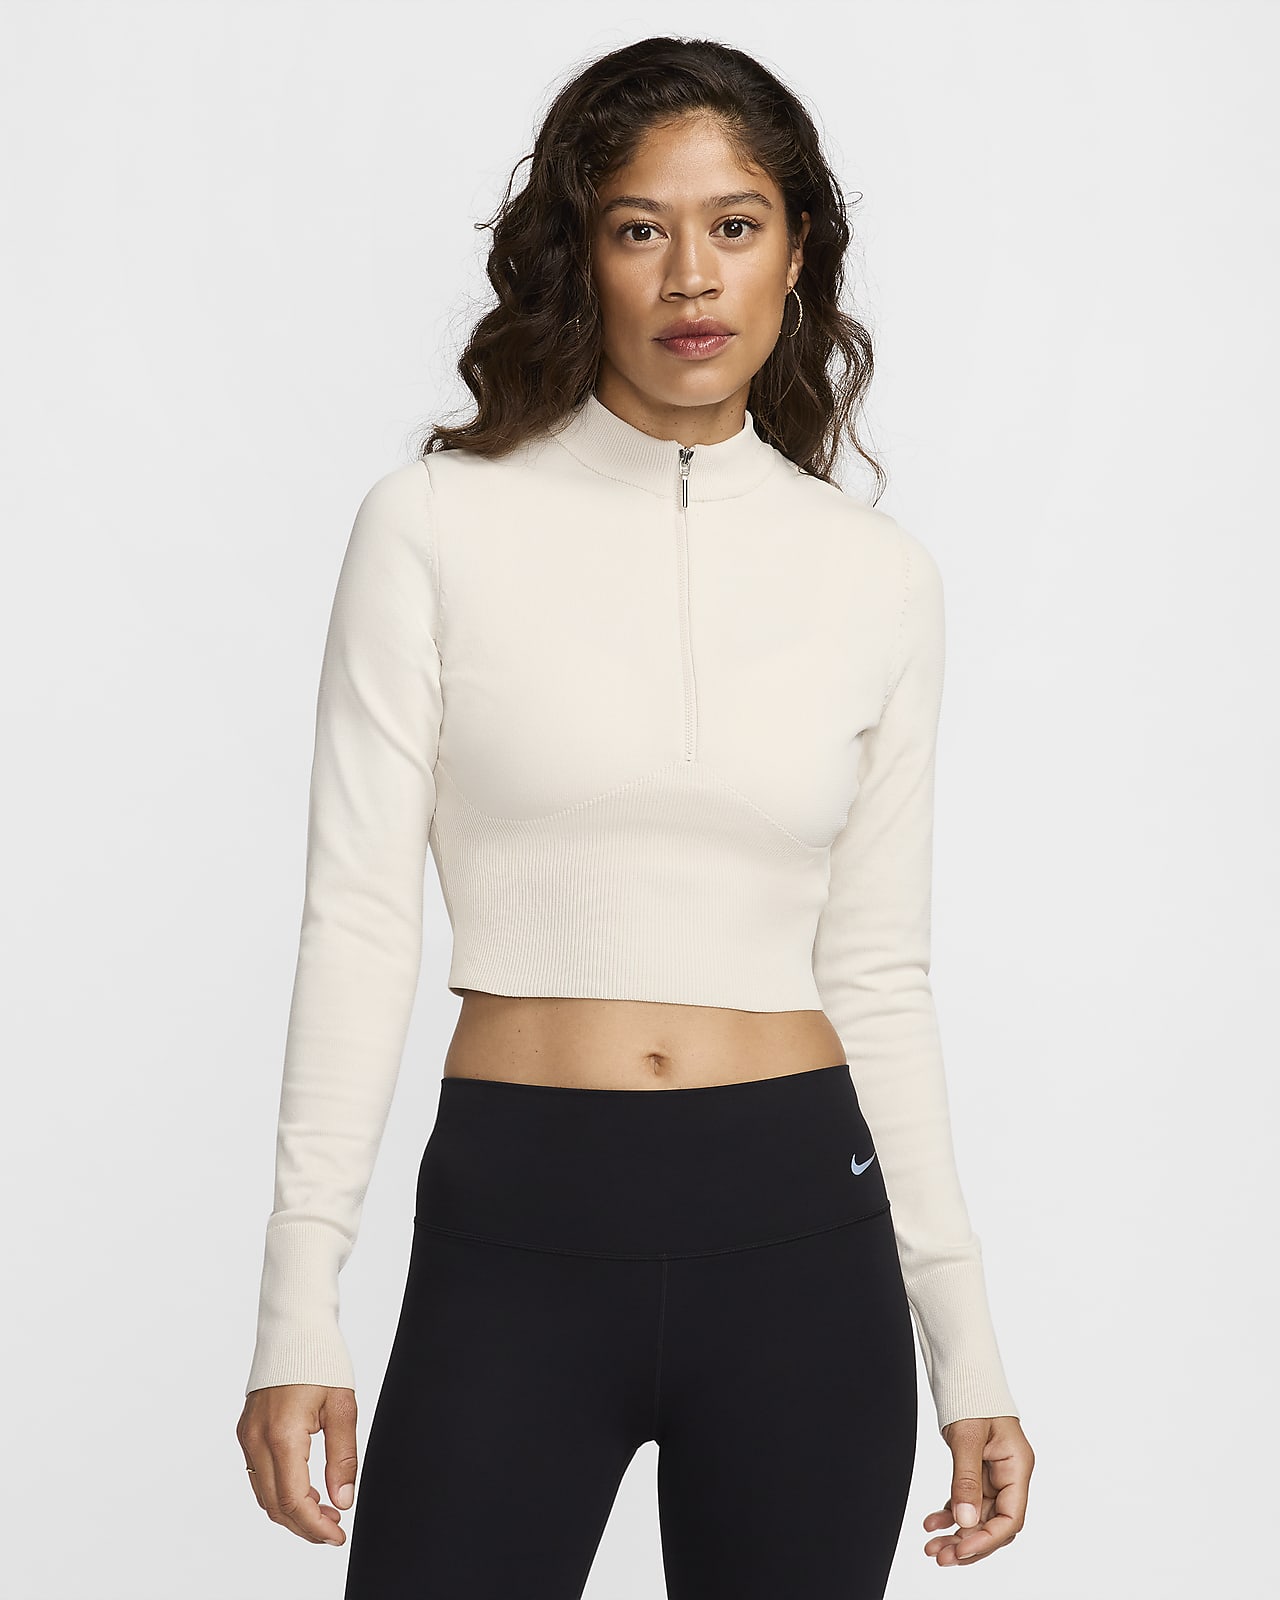 Nike Sportswear Chill Knit karcsúsított, hosszú ujjú, rövid szabású, rövid cipzáras női pulóver